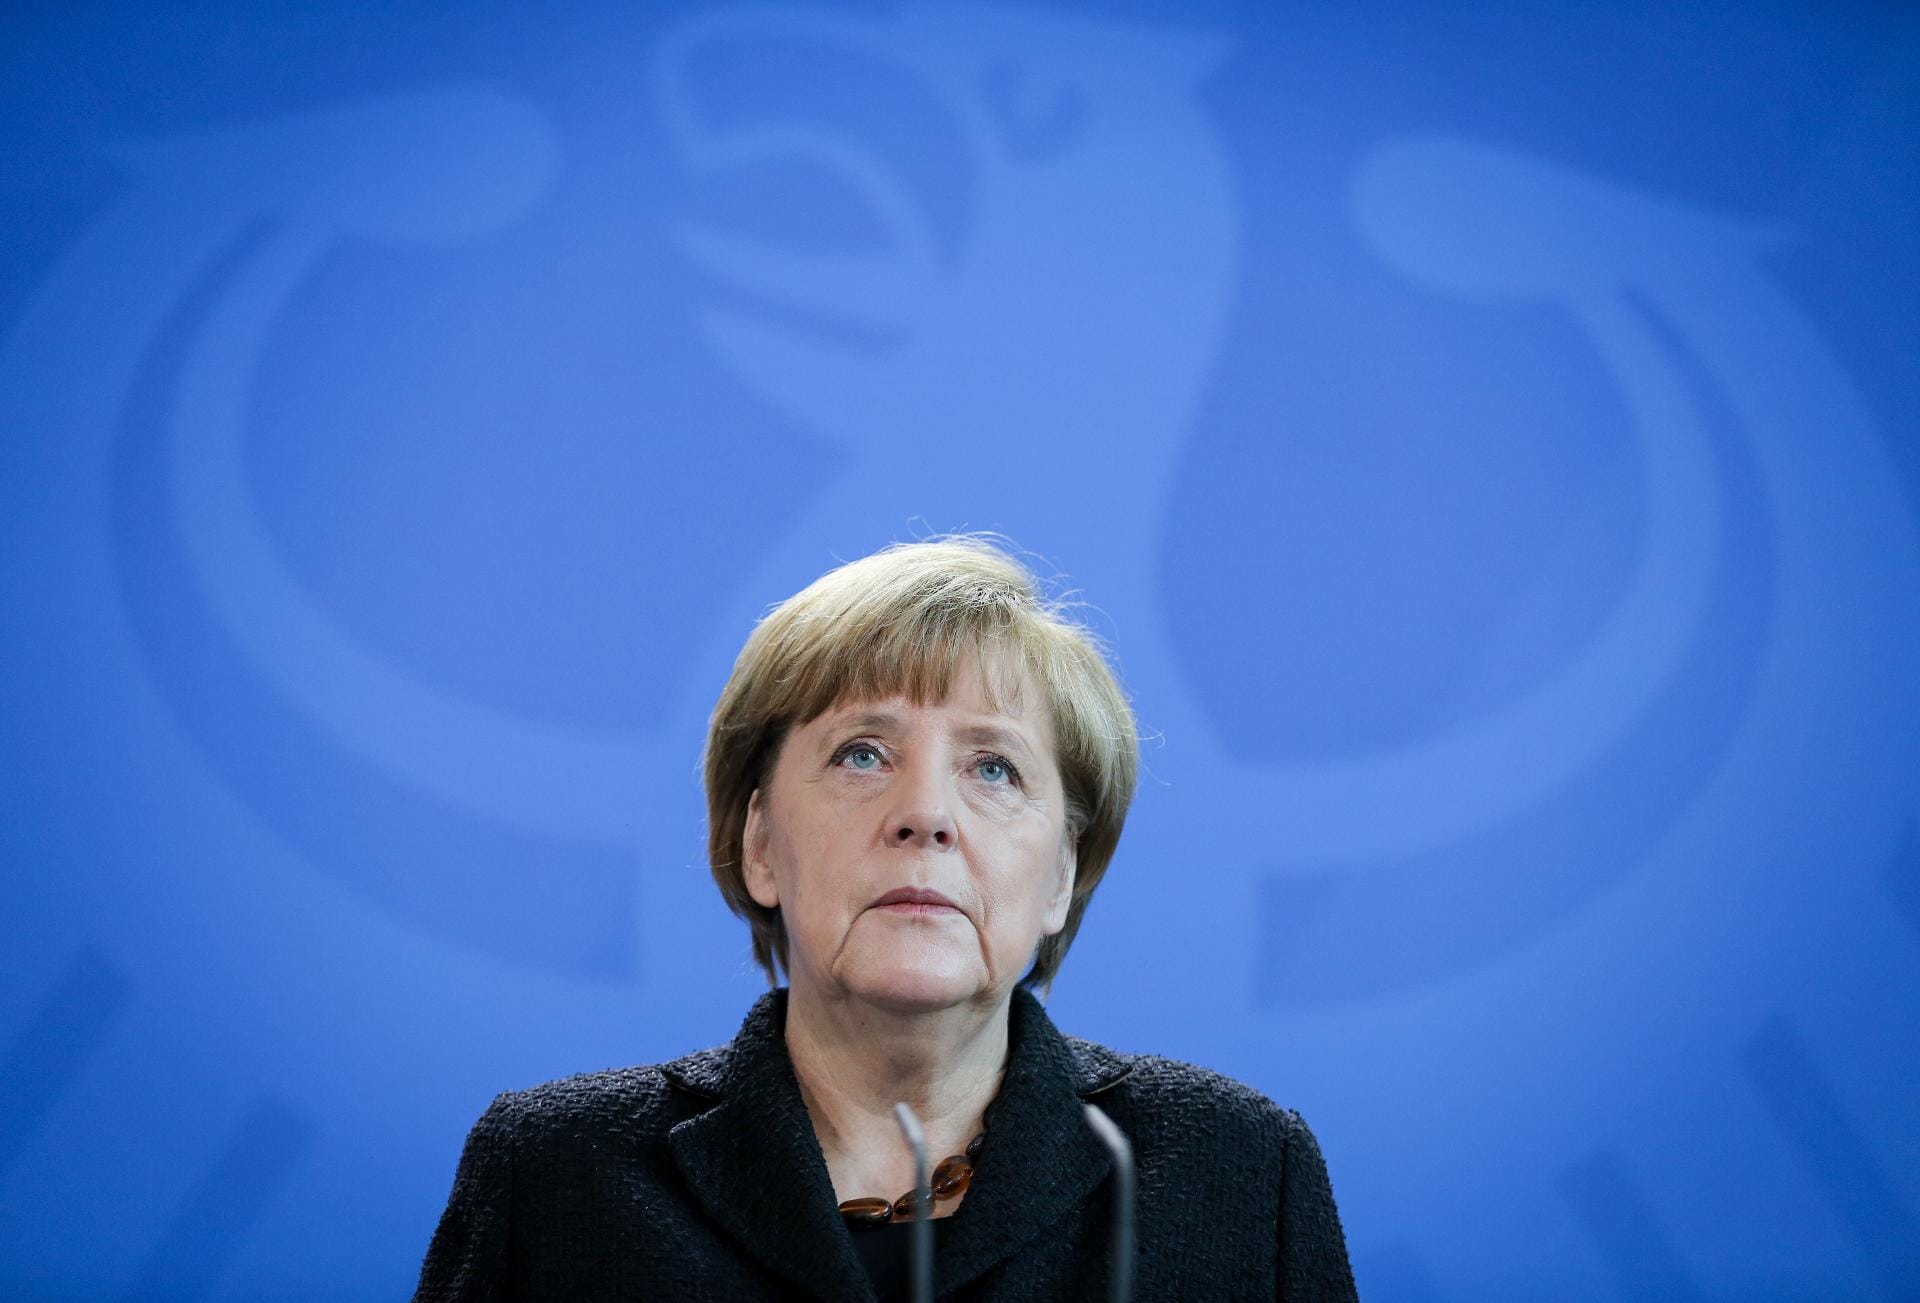 Bundeskanzlerin Angela Merkel zeigte ihr tiefes Mitgefühl und sagte: "Wir werden alle gemeinsam die Antwort geben."